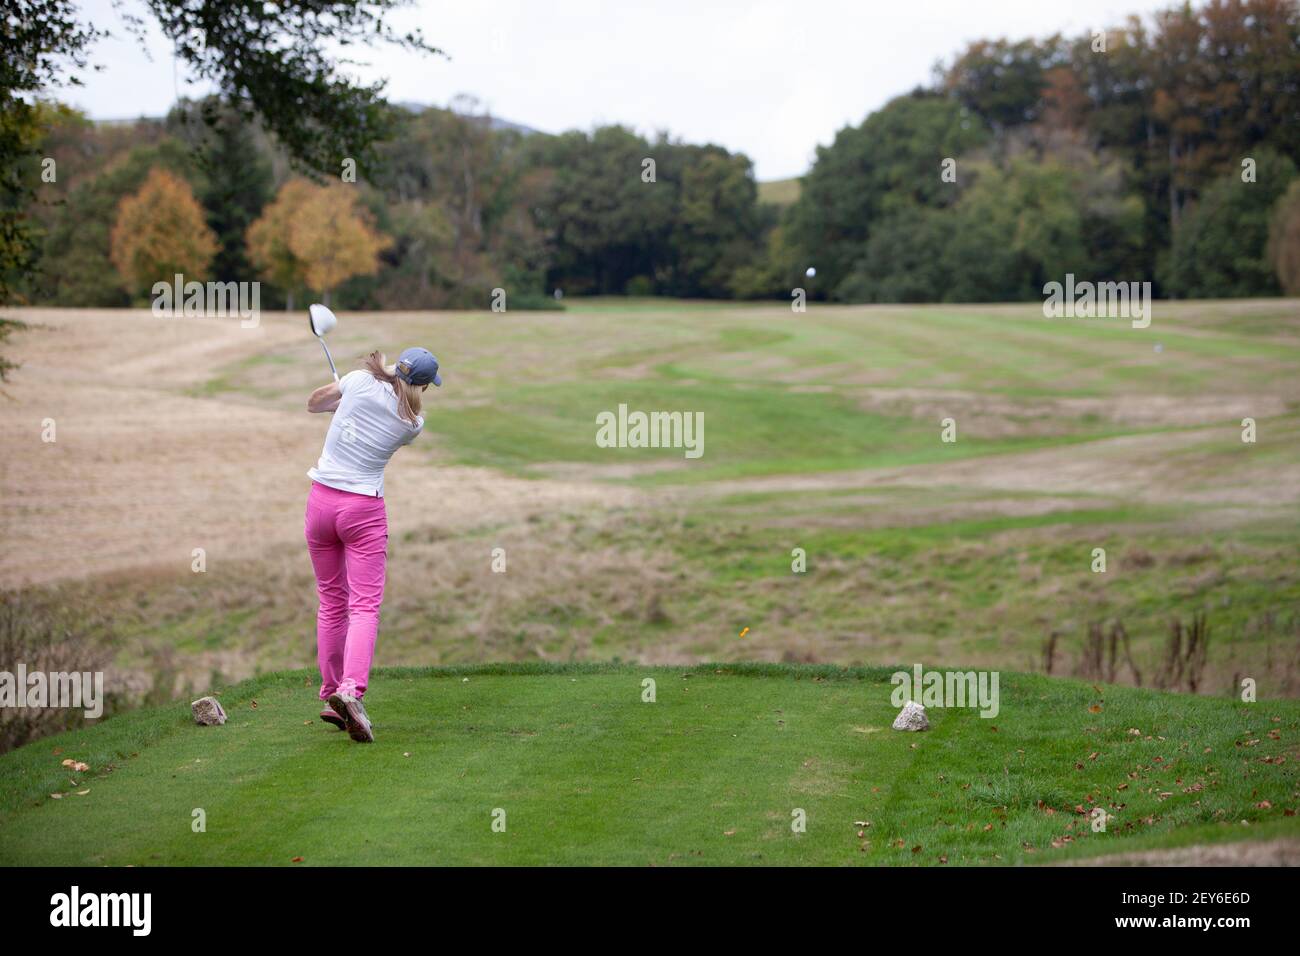 Une golfeuse portant un pantalon rose est vêtue d'un t-shirt parcours de golf Banque D'Images